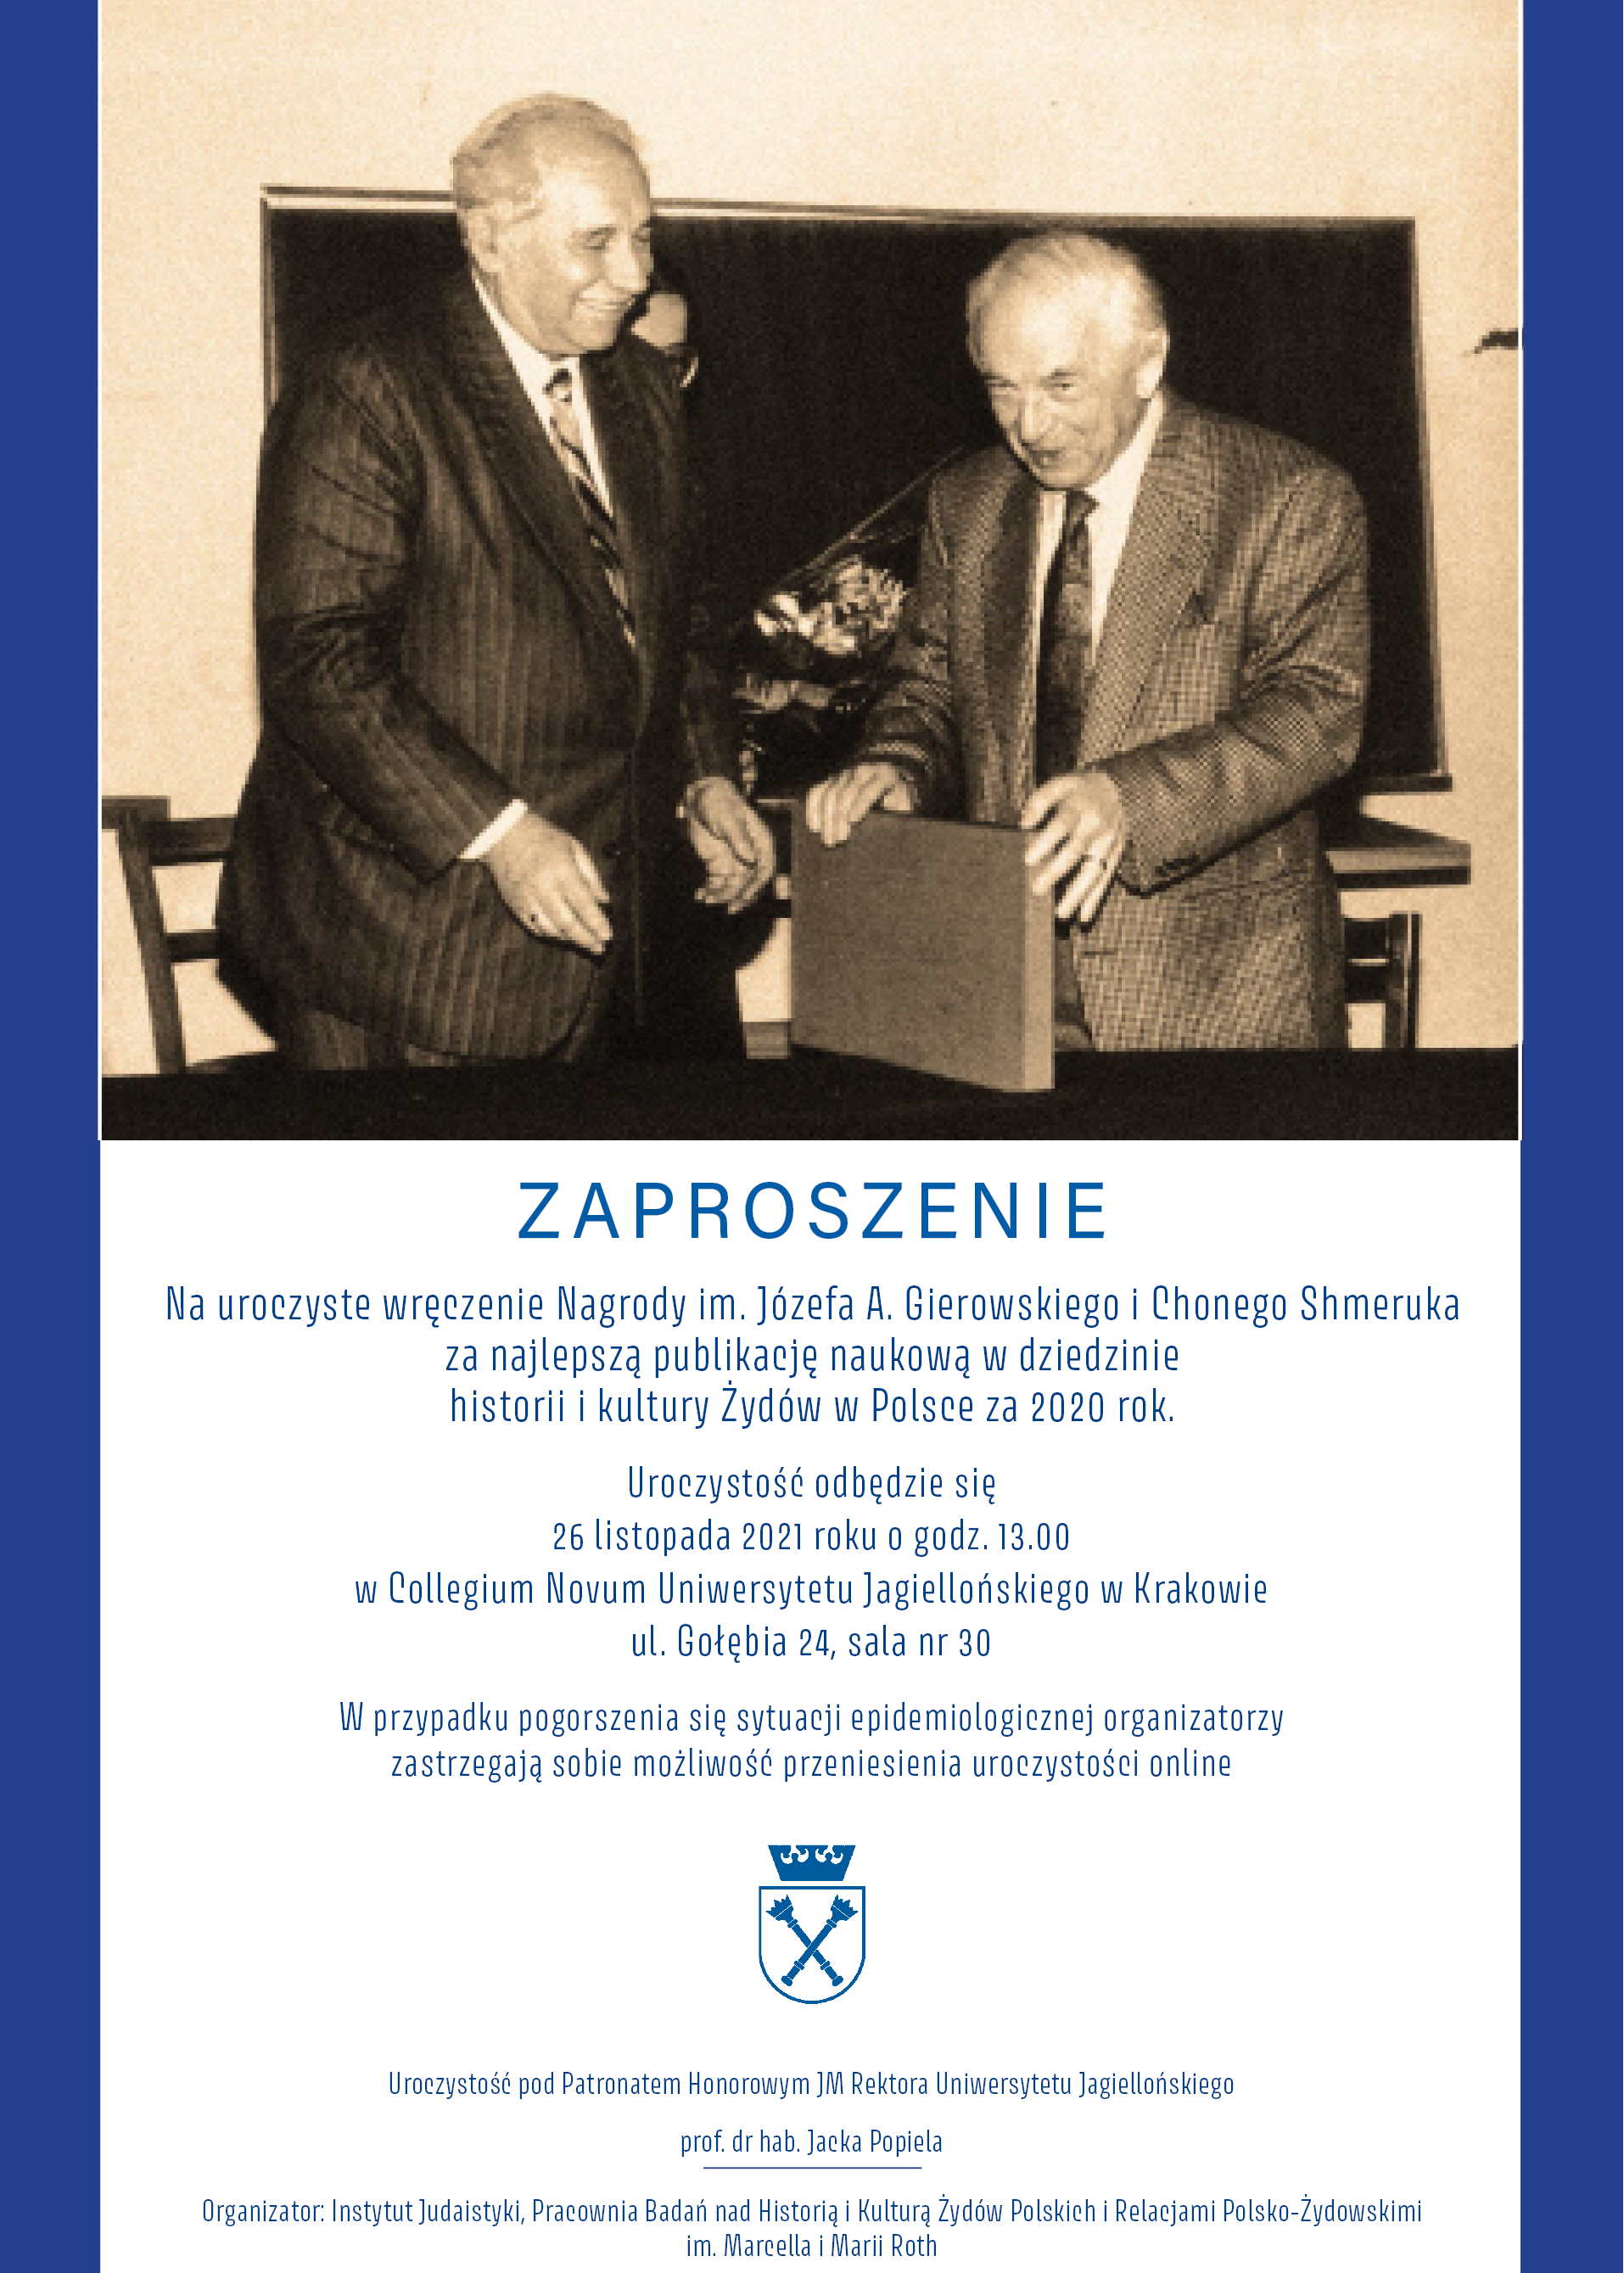 Zaproszenie na wręczenie nagrody imienia Józefa A. Gierowskiego i Chonego Shmeruka